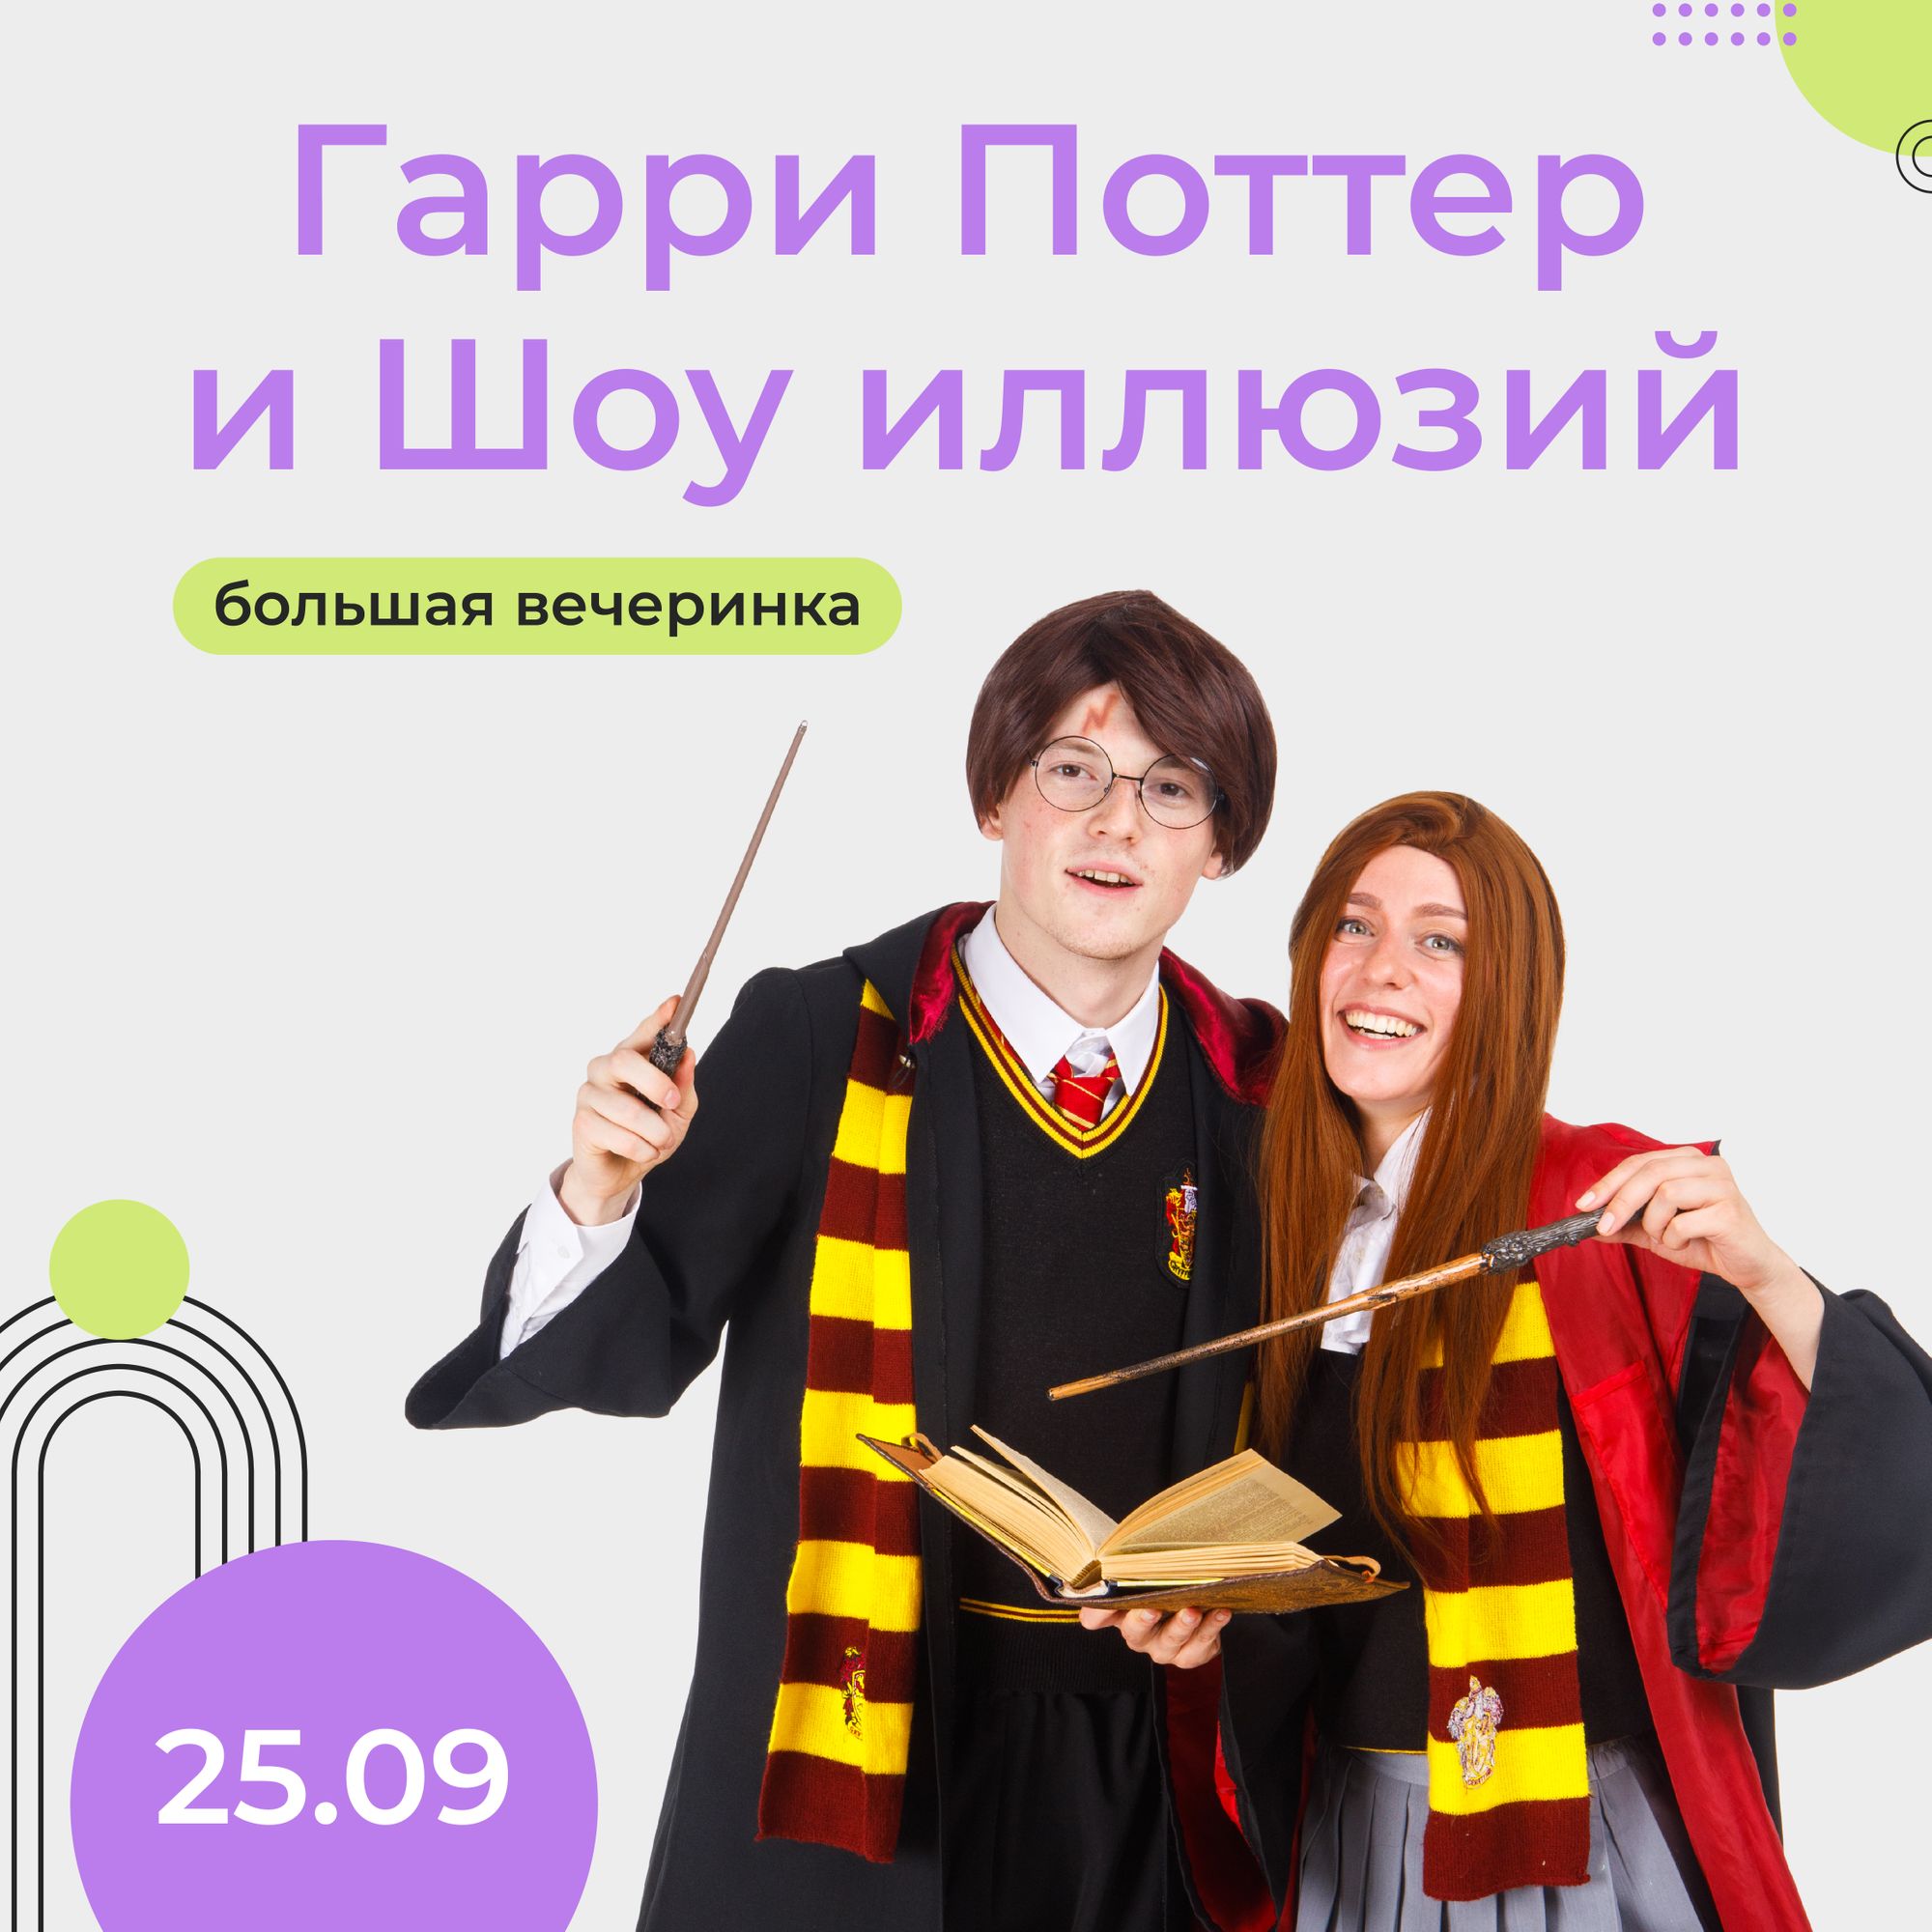 25 сентября — Вечеринка “Гарри Поттер и Шоу иллюзий” в Joki Joya Defis